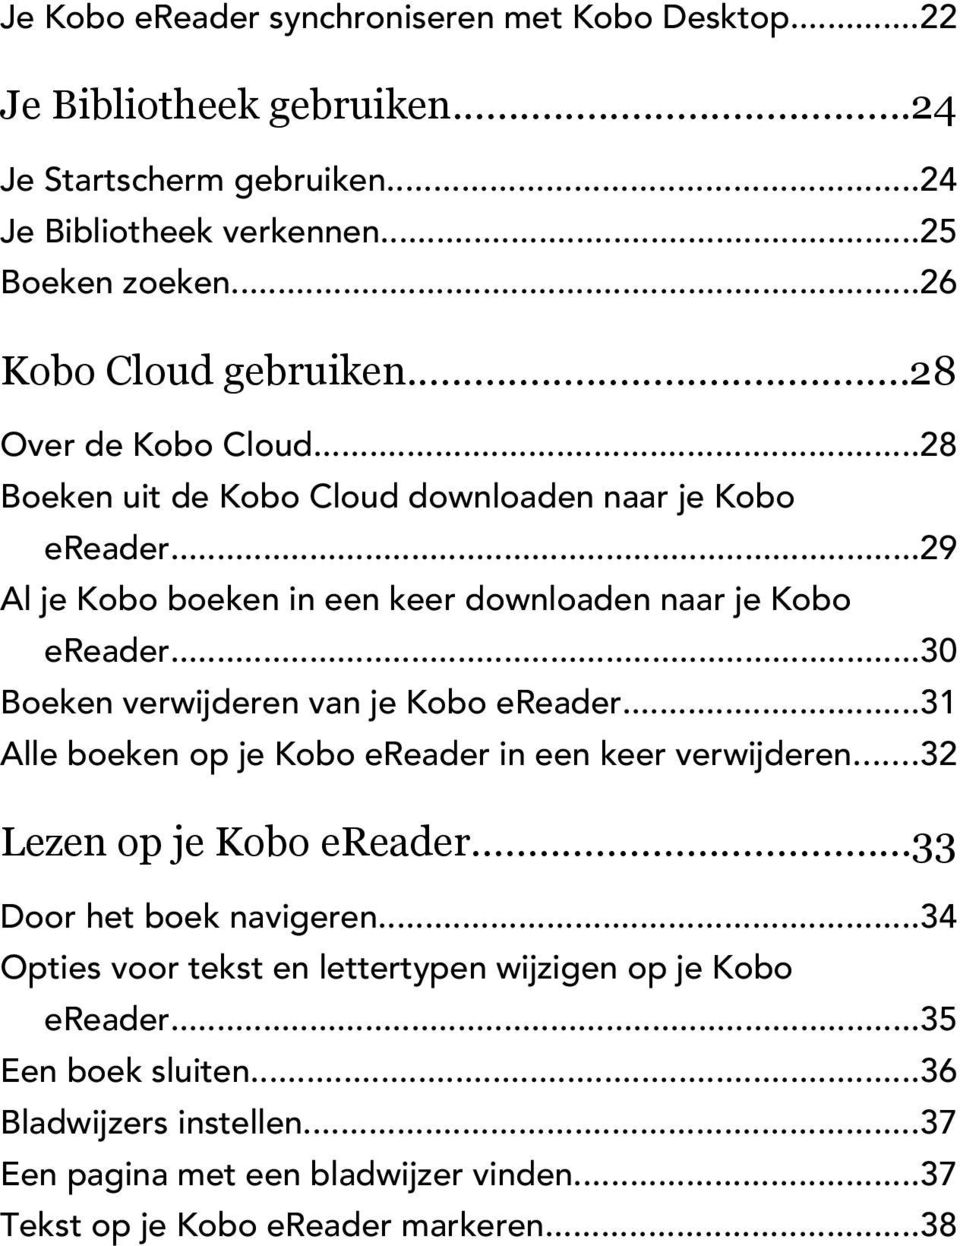 ..29 Al je Kobo boeken in een keer downloaden naar je Kobo ereader...30 Boeken verwijderen van je Kobo ereader...31 Alle boeken op je Kobo ereader in een keer verwijderen.